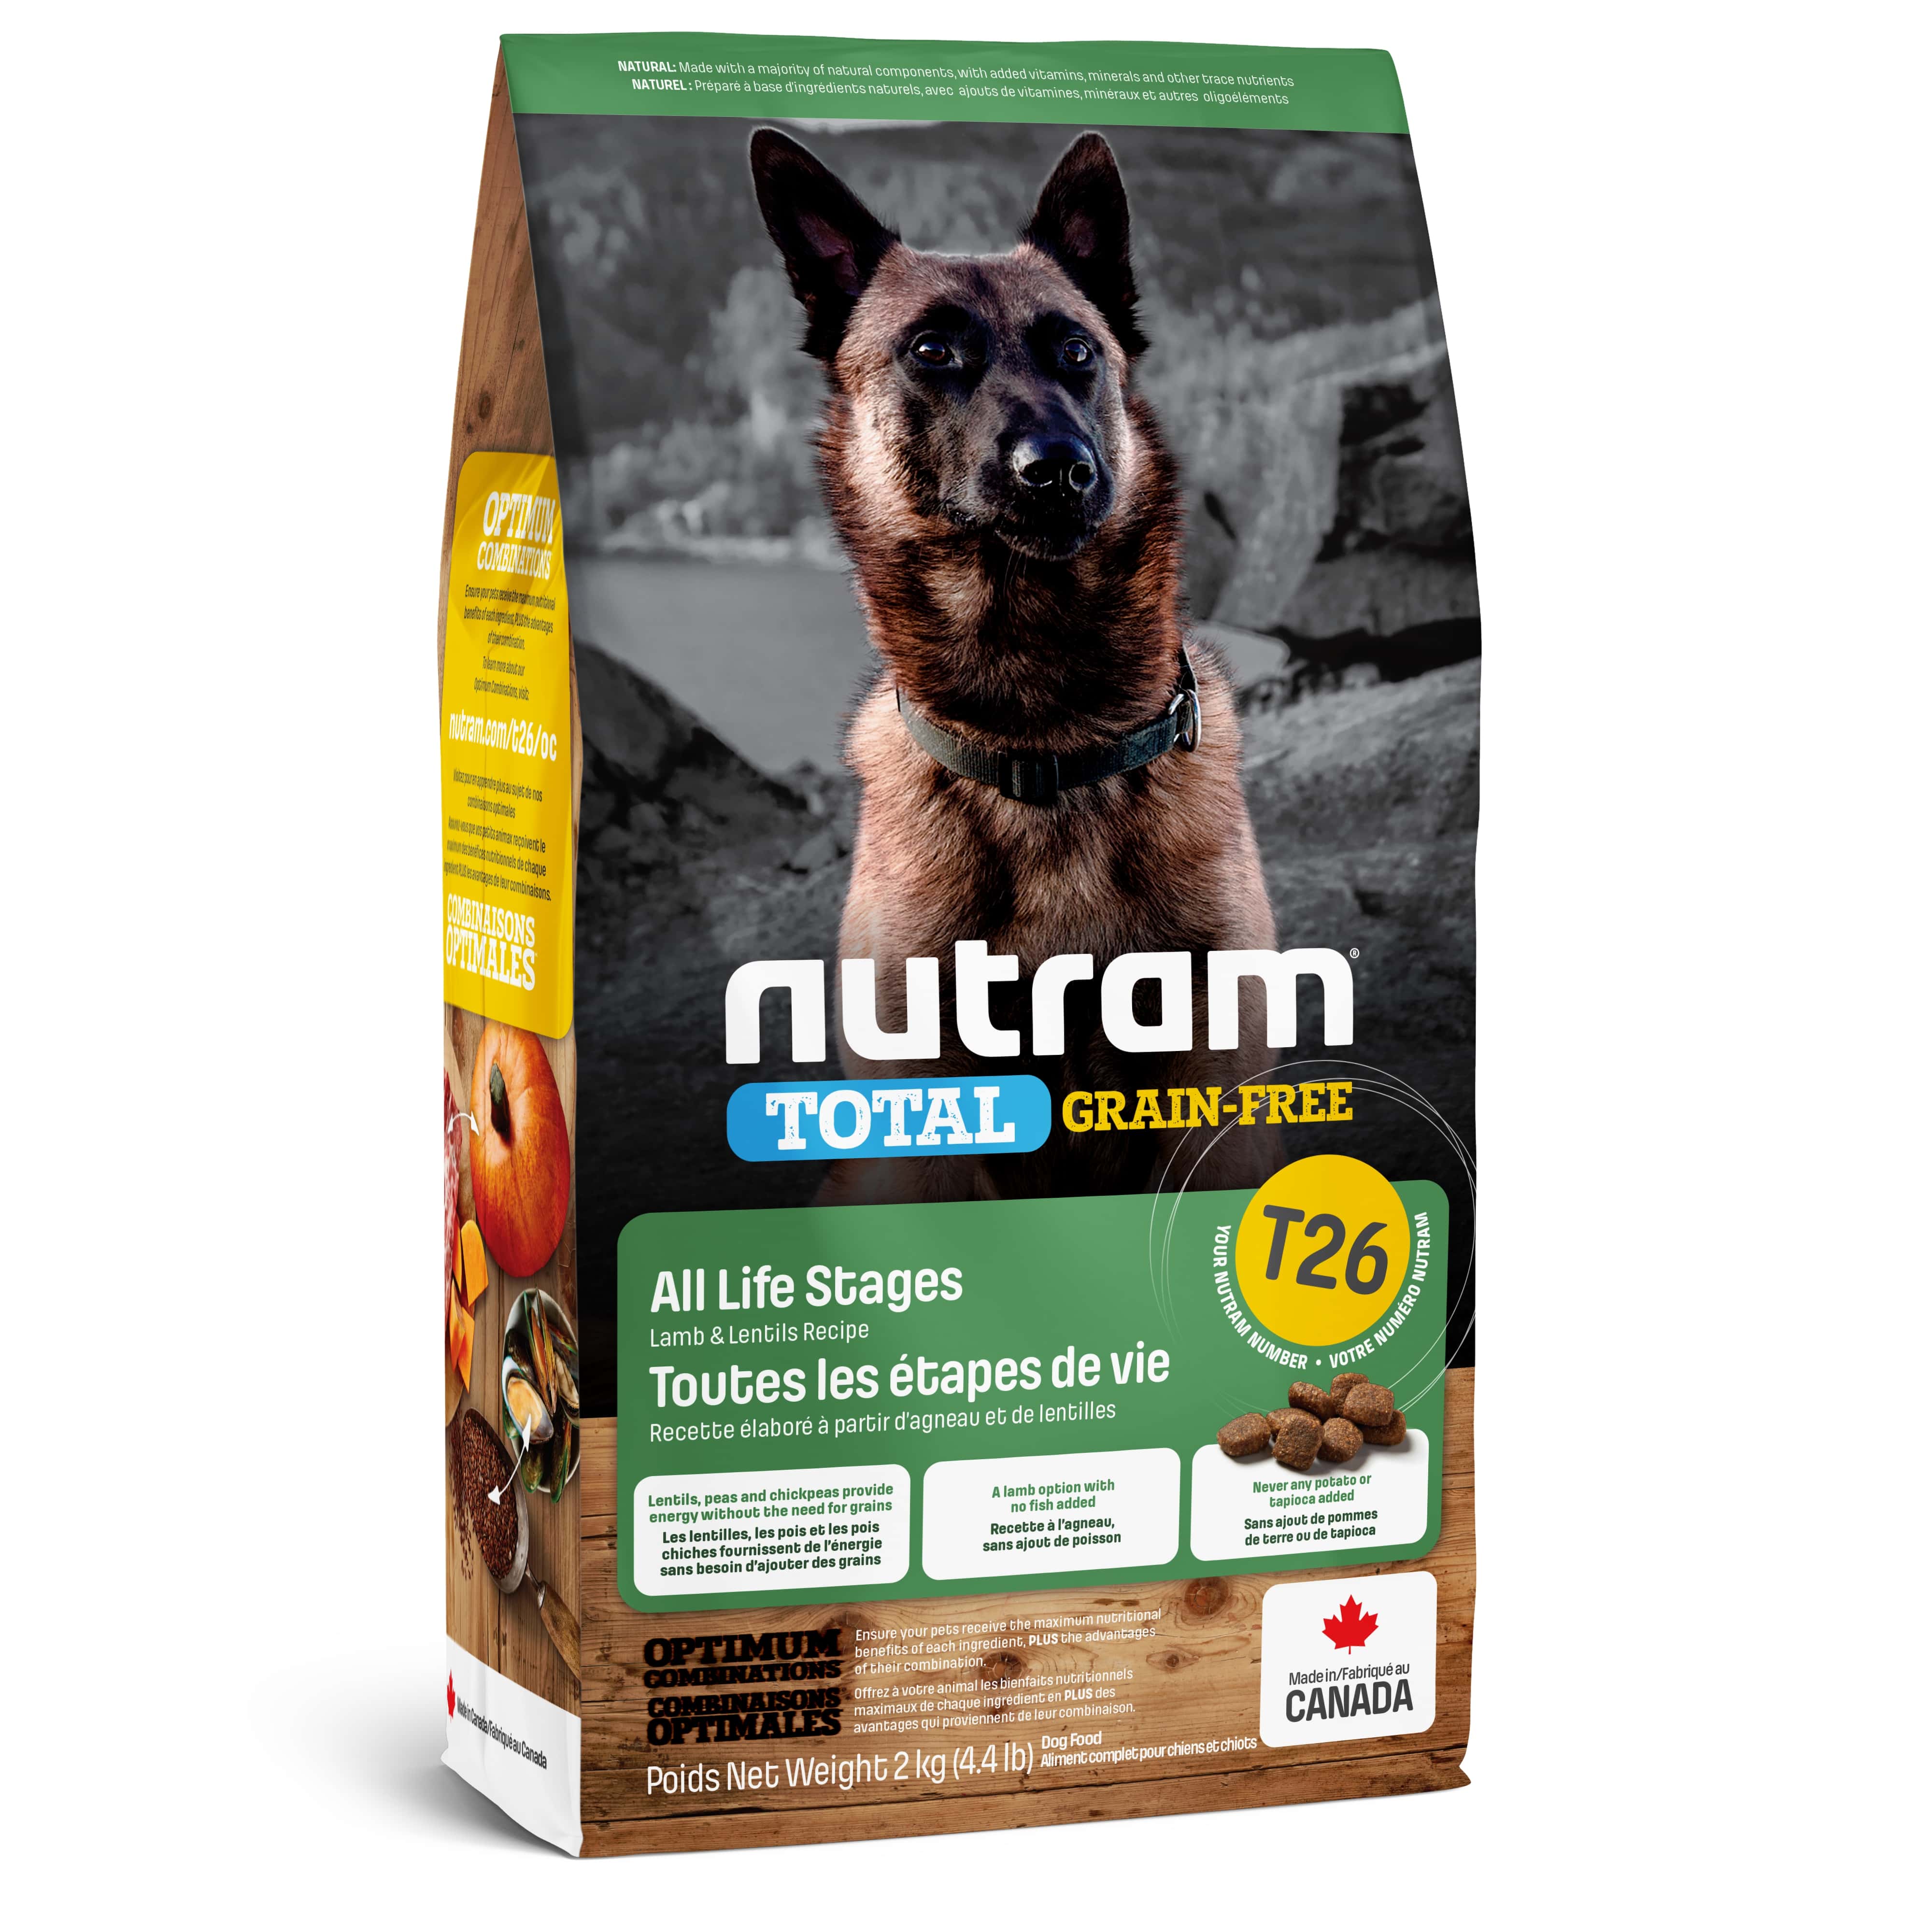 T26 Nutram Total Grain-Free® Lamb & Lentils Dog Food